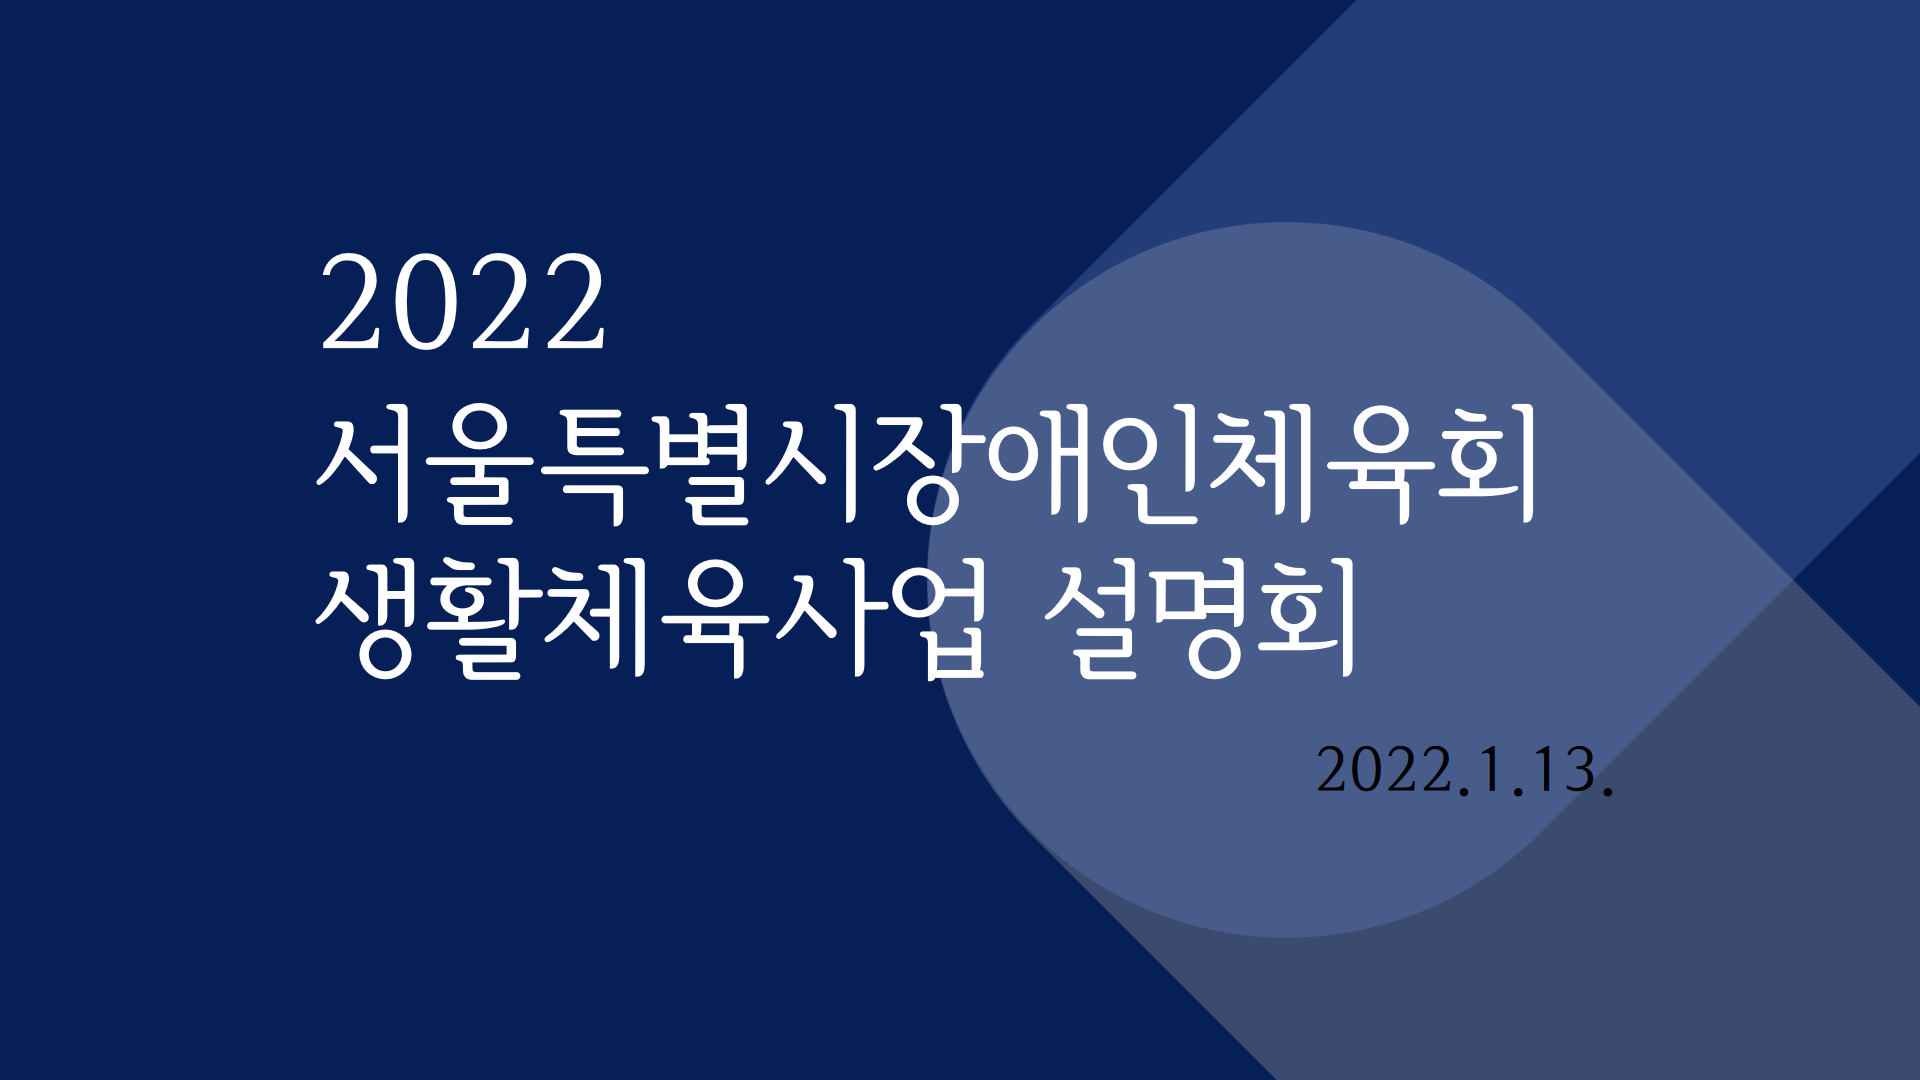 2022년 서울특별시장애인체육회 생활체육사업 설명회 개최[2022.1.13.]